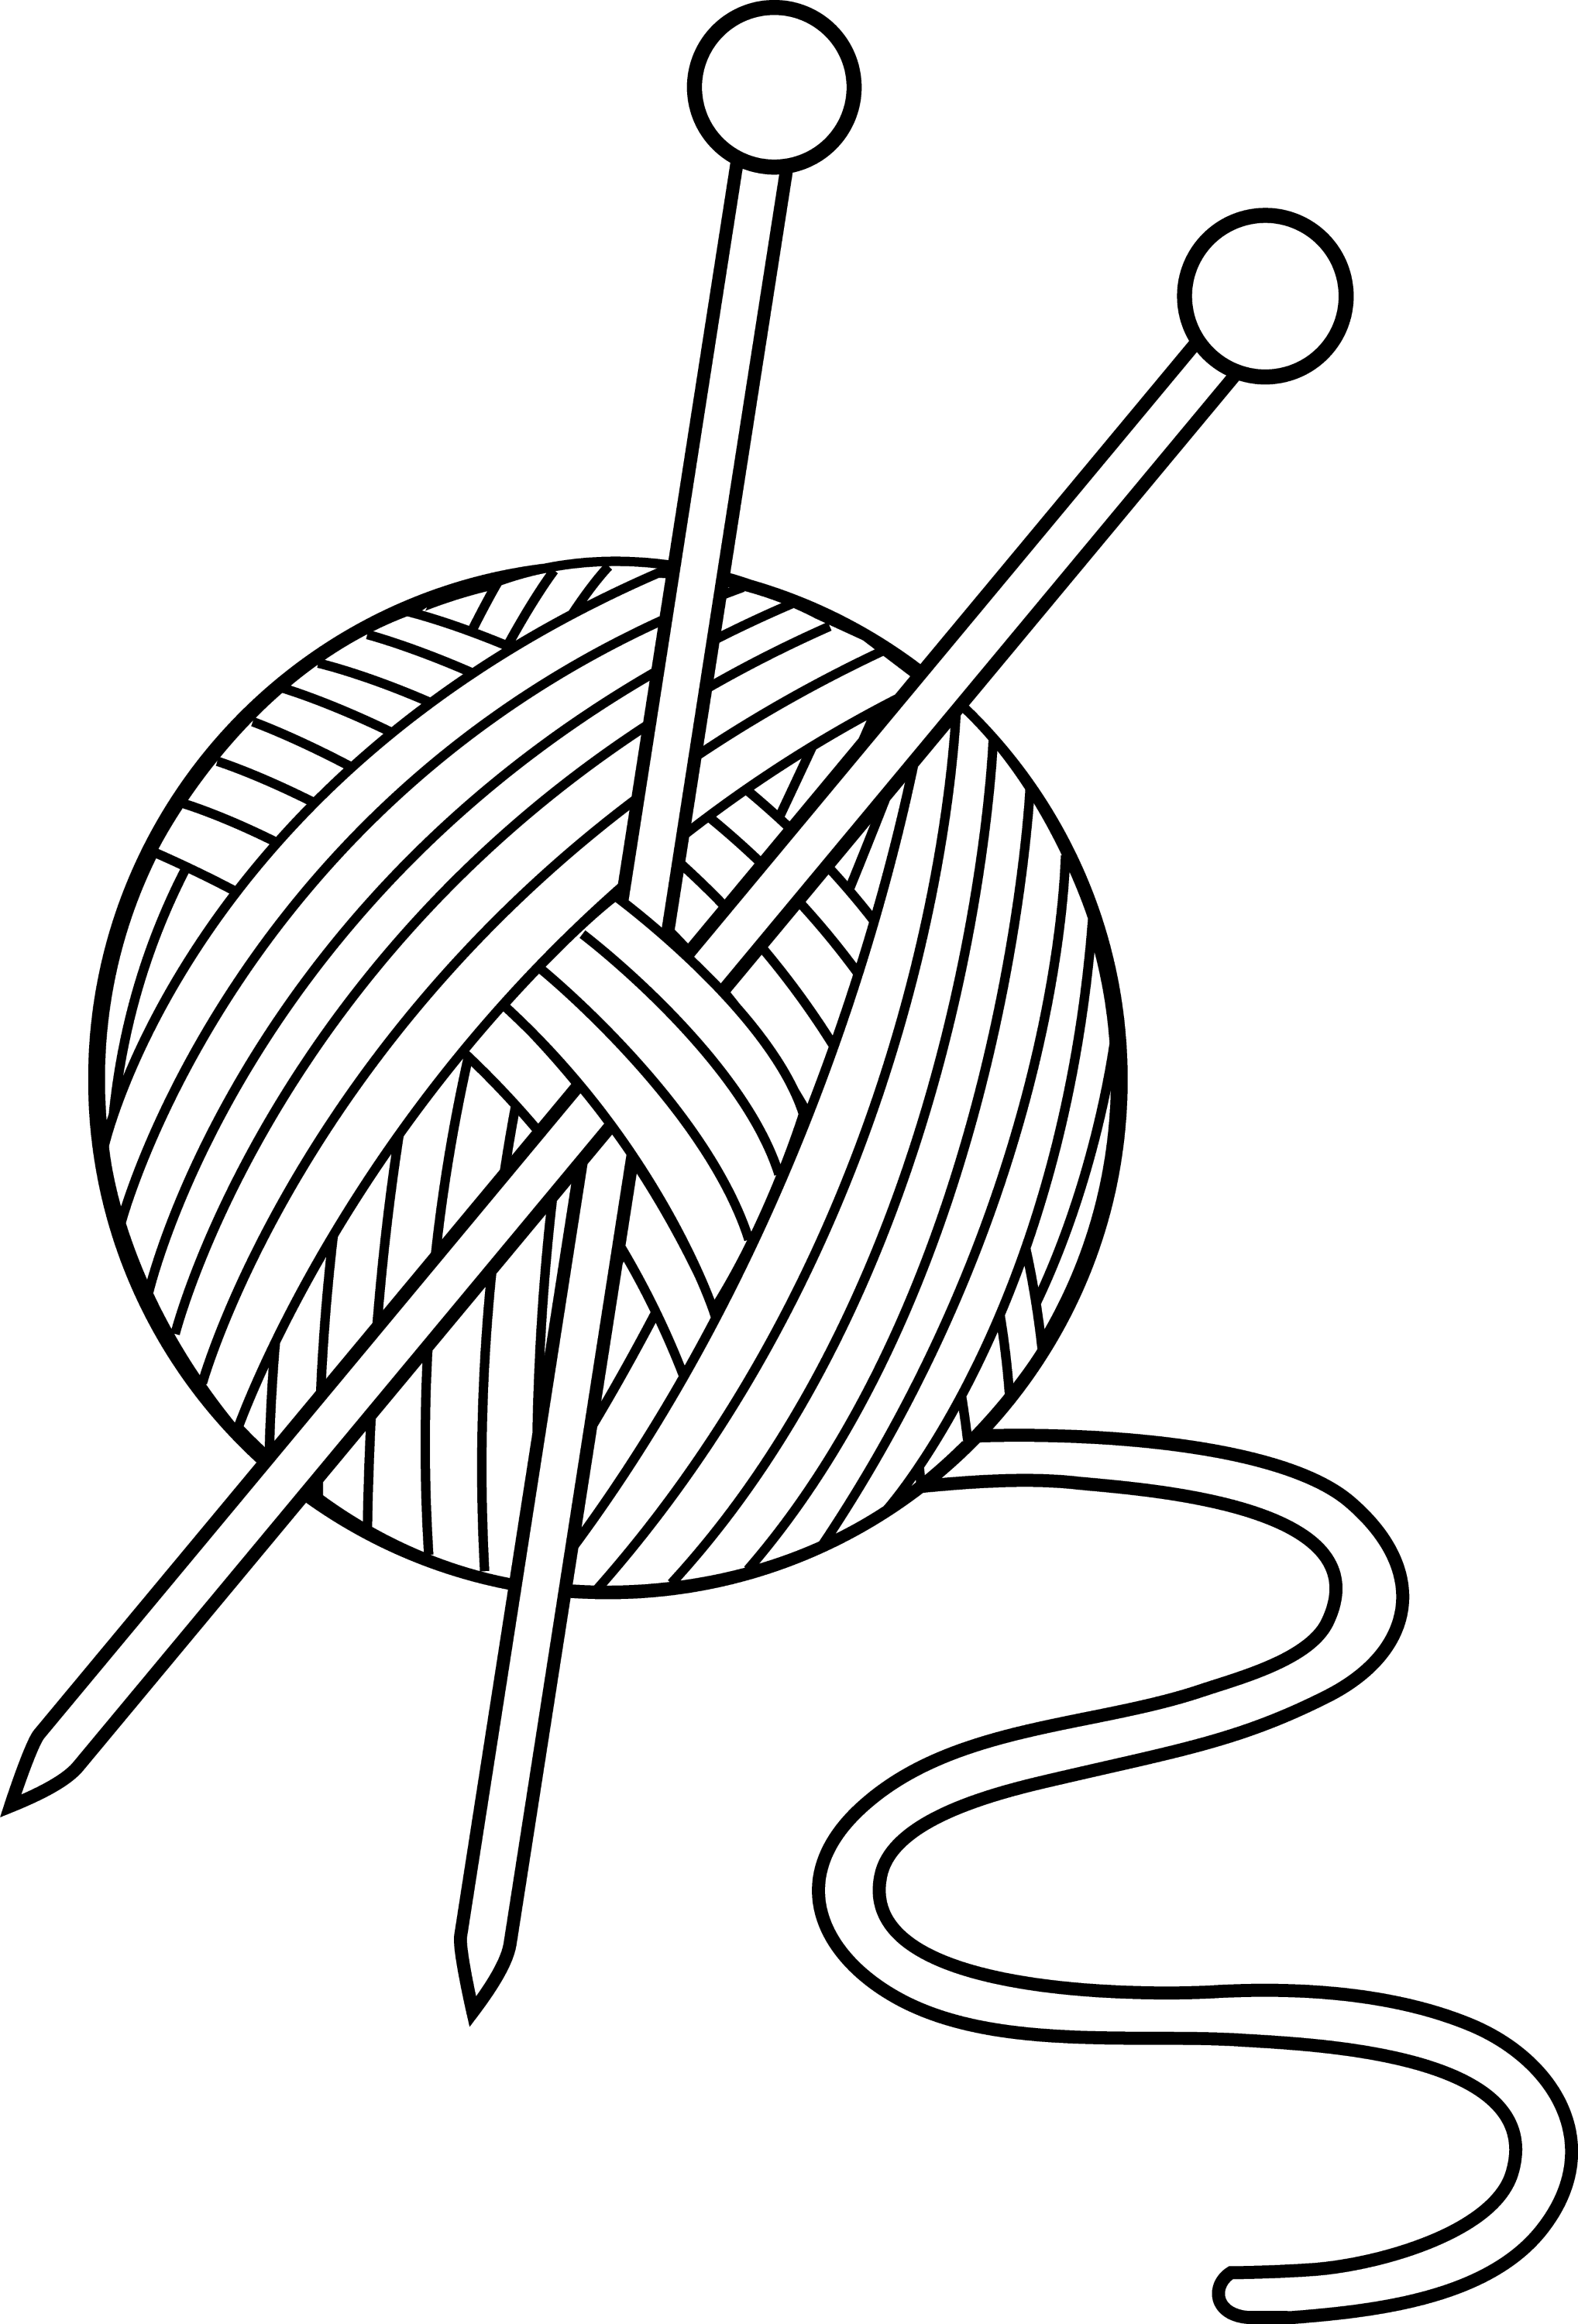 yarn and needles clip art - photo #2